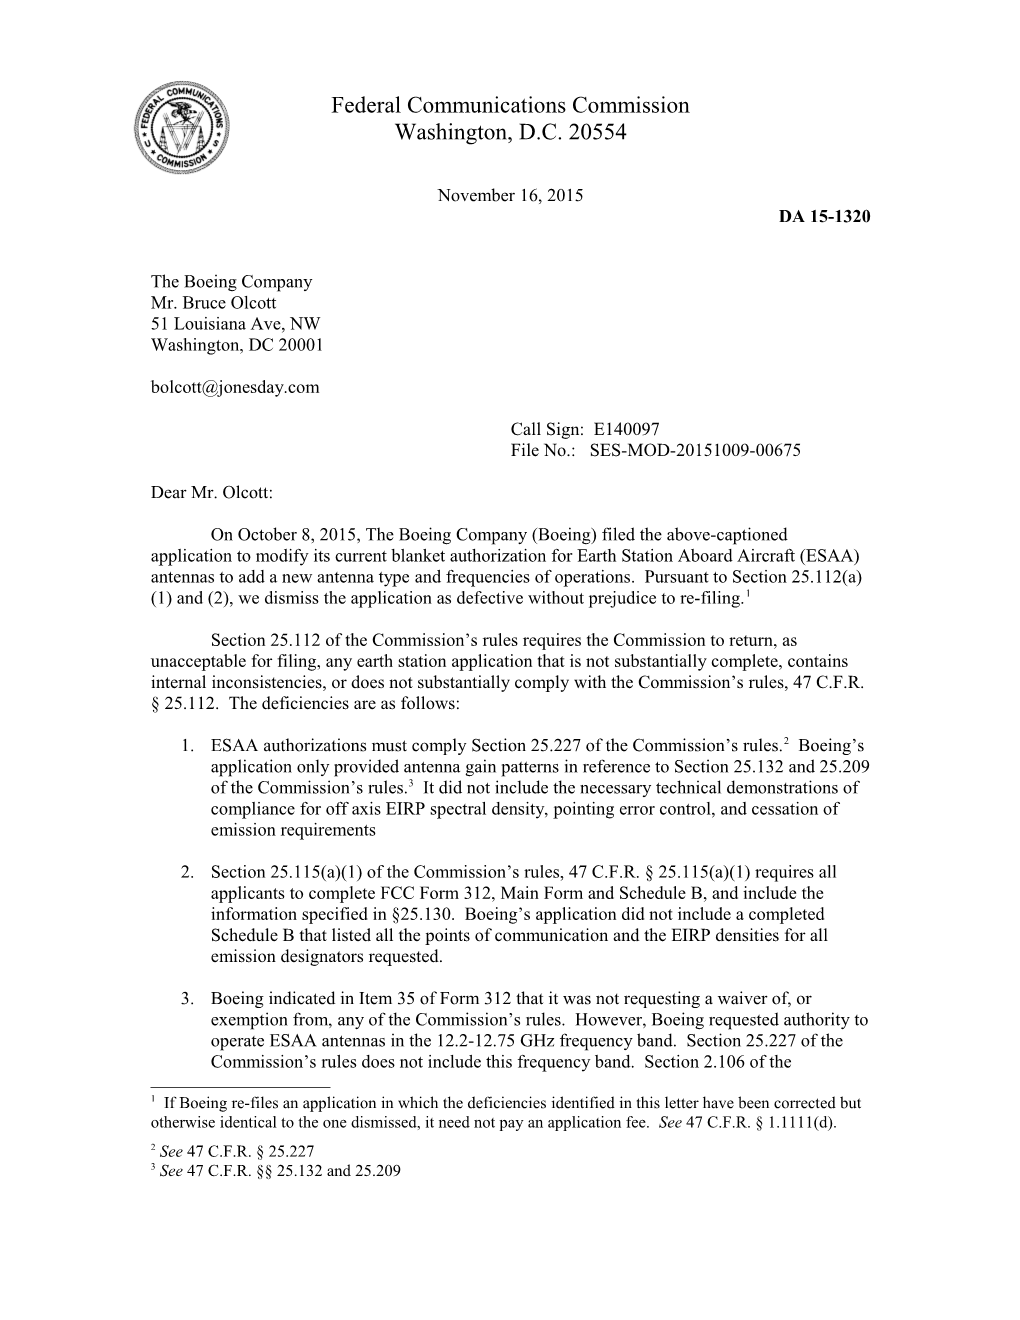 Federal Communications Commission DA 15-1320